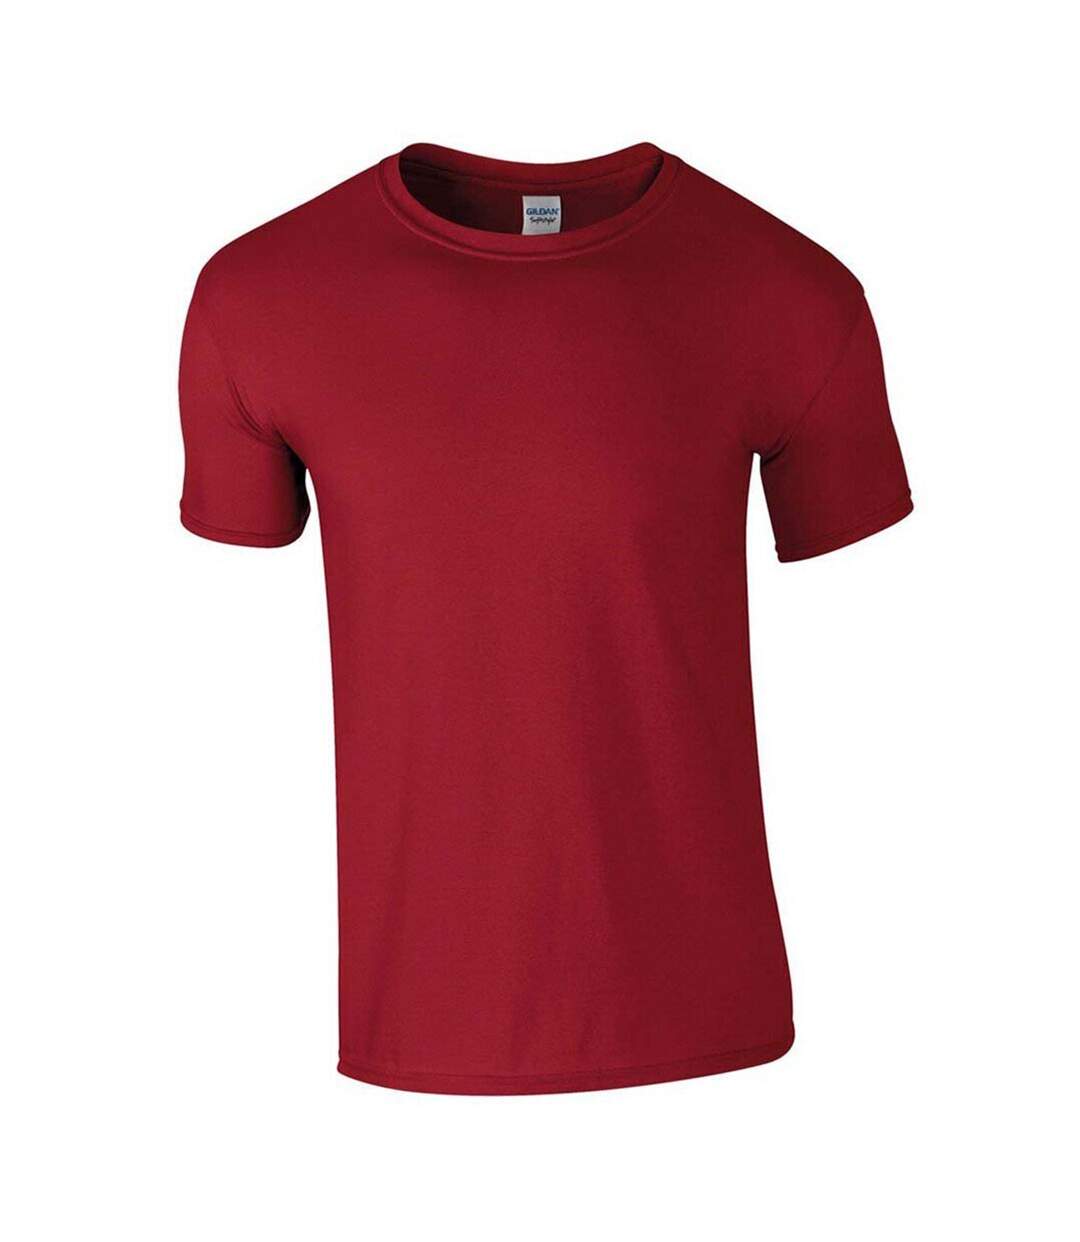 Gildan Mens Soft Style Ringspun T Shirt (Cardinal Red)